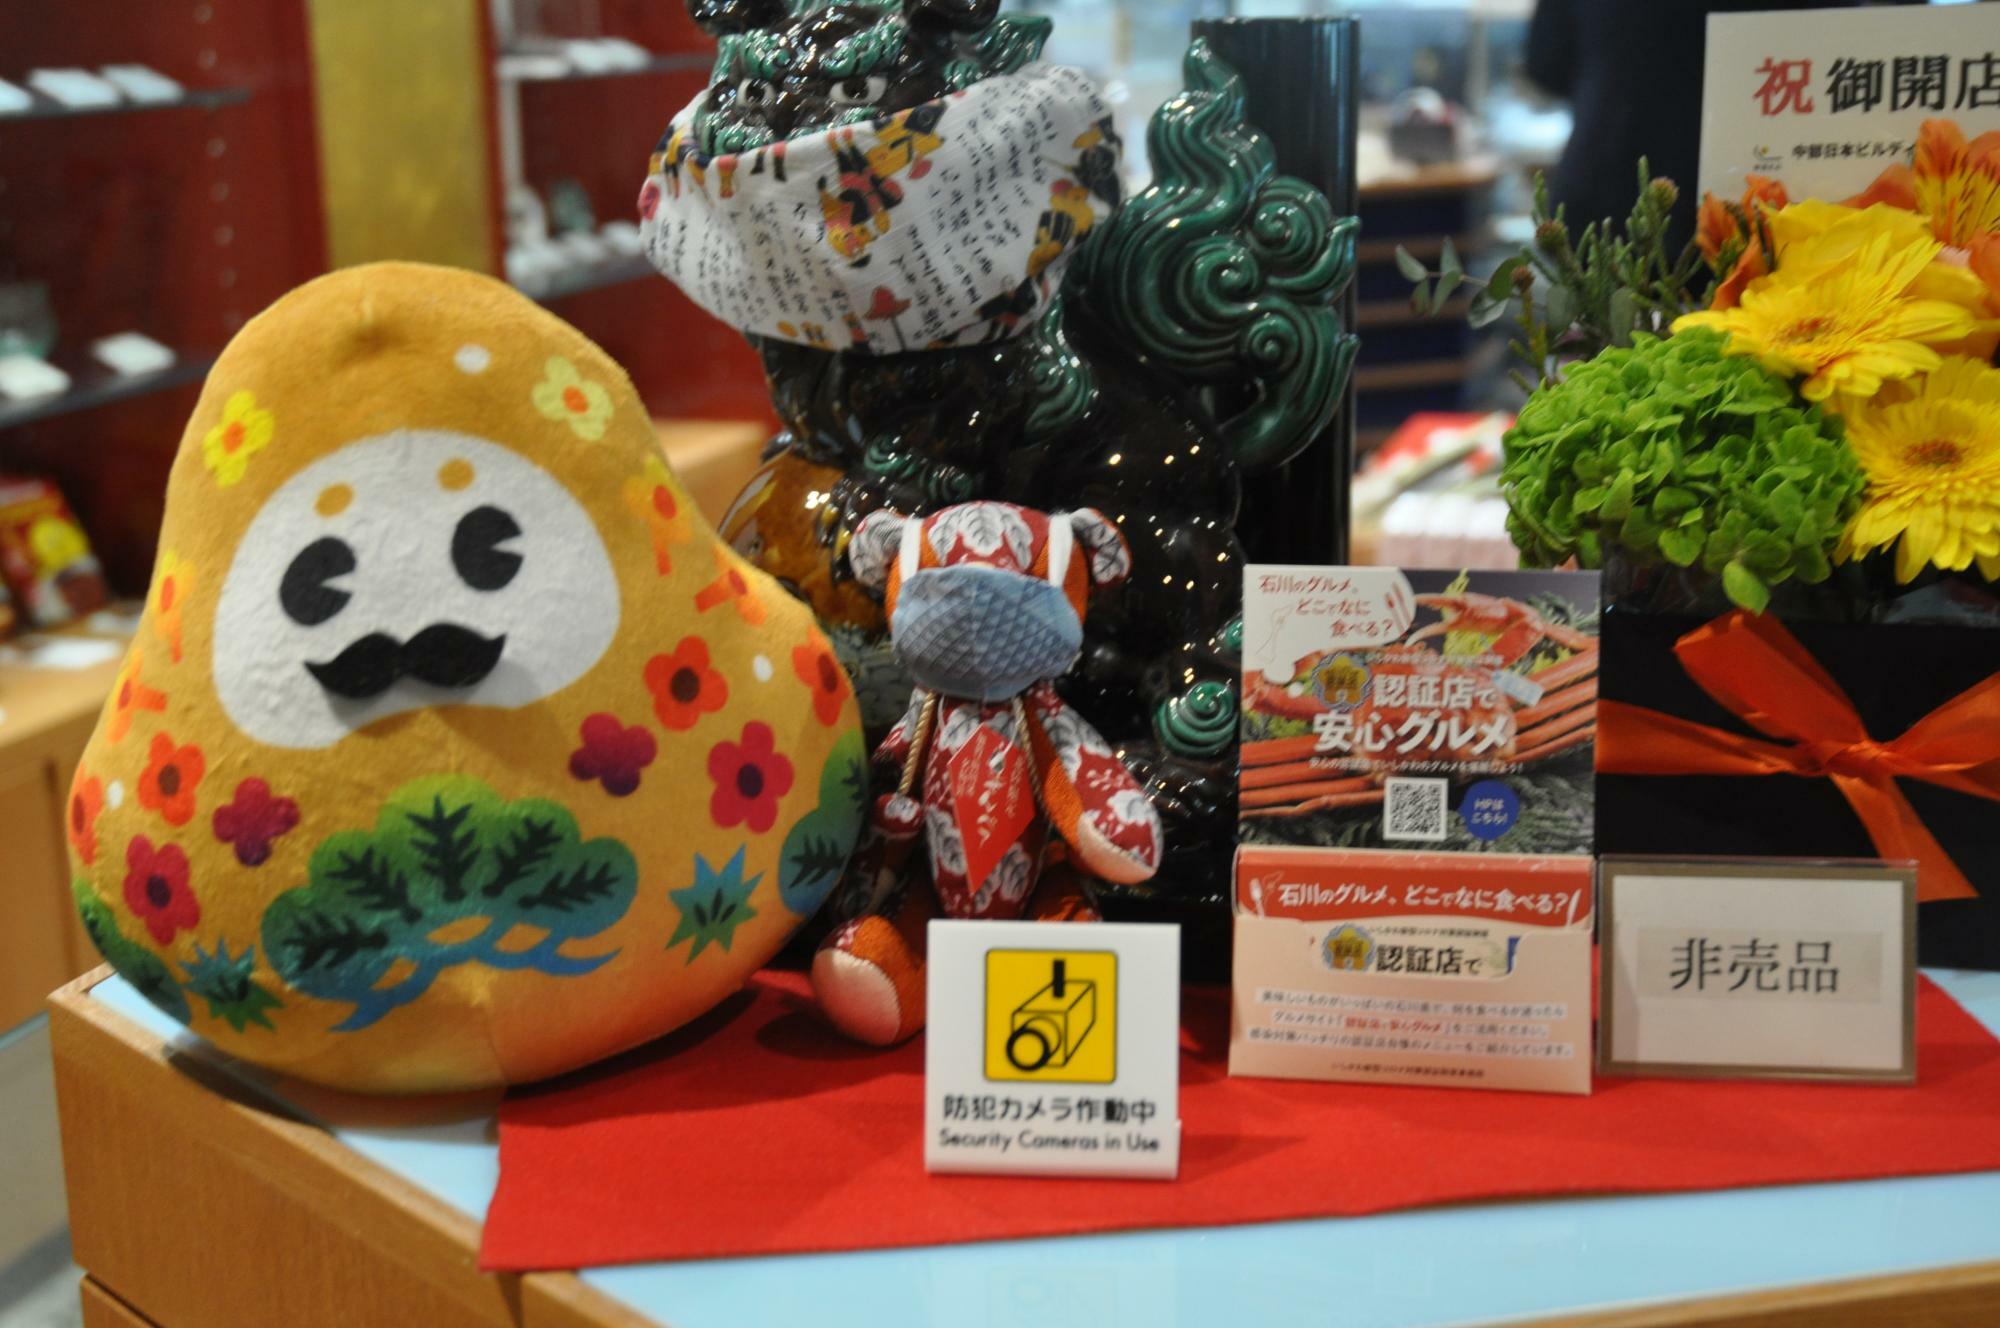 石川県観光PRマスコットキャラクター「ひゃくまんさん」。ころんとした形がかわいい！